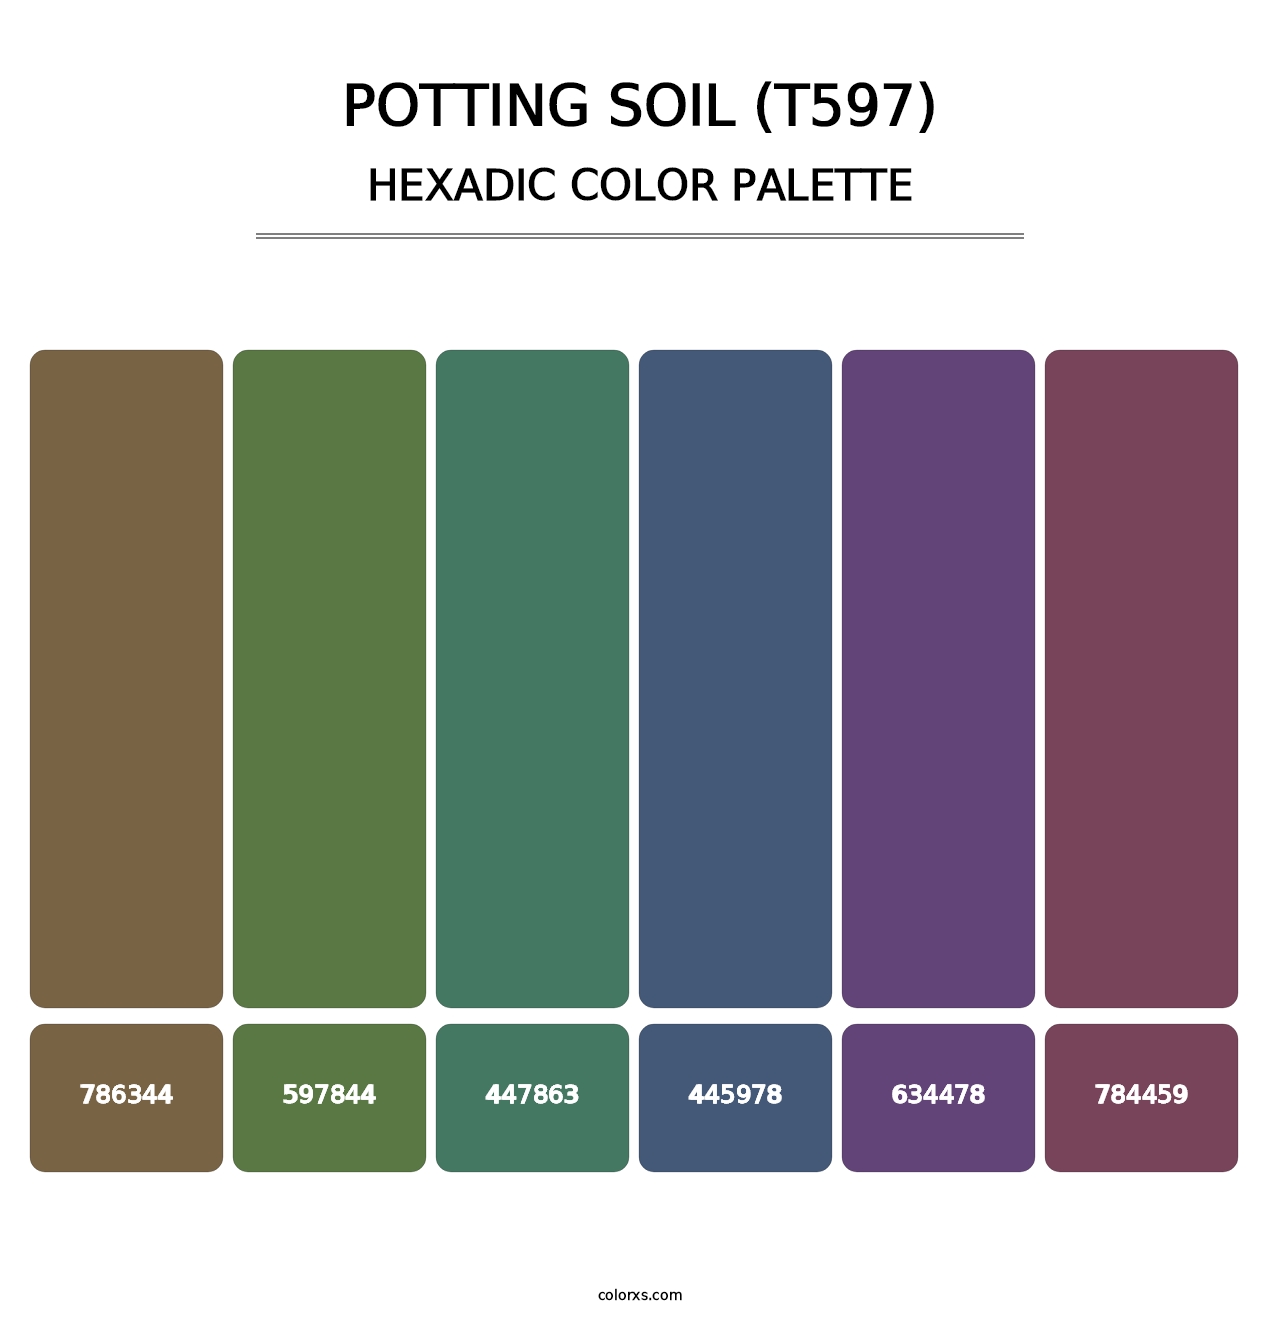 Potting Soil (T597) - Hexadic Color Palette